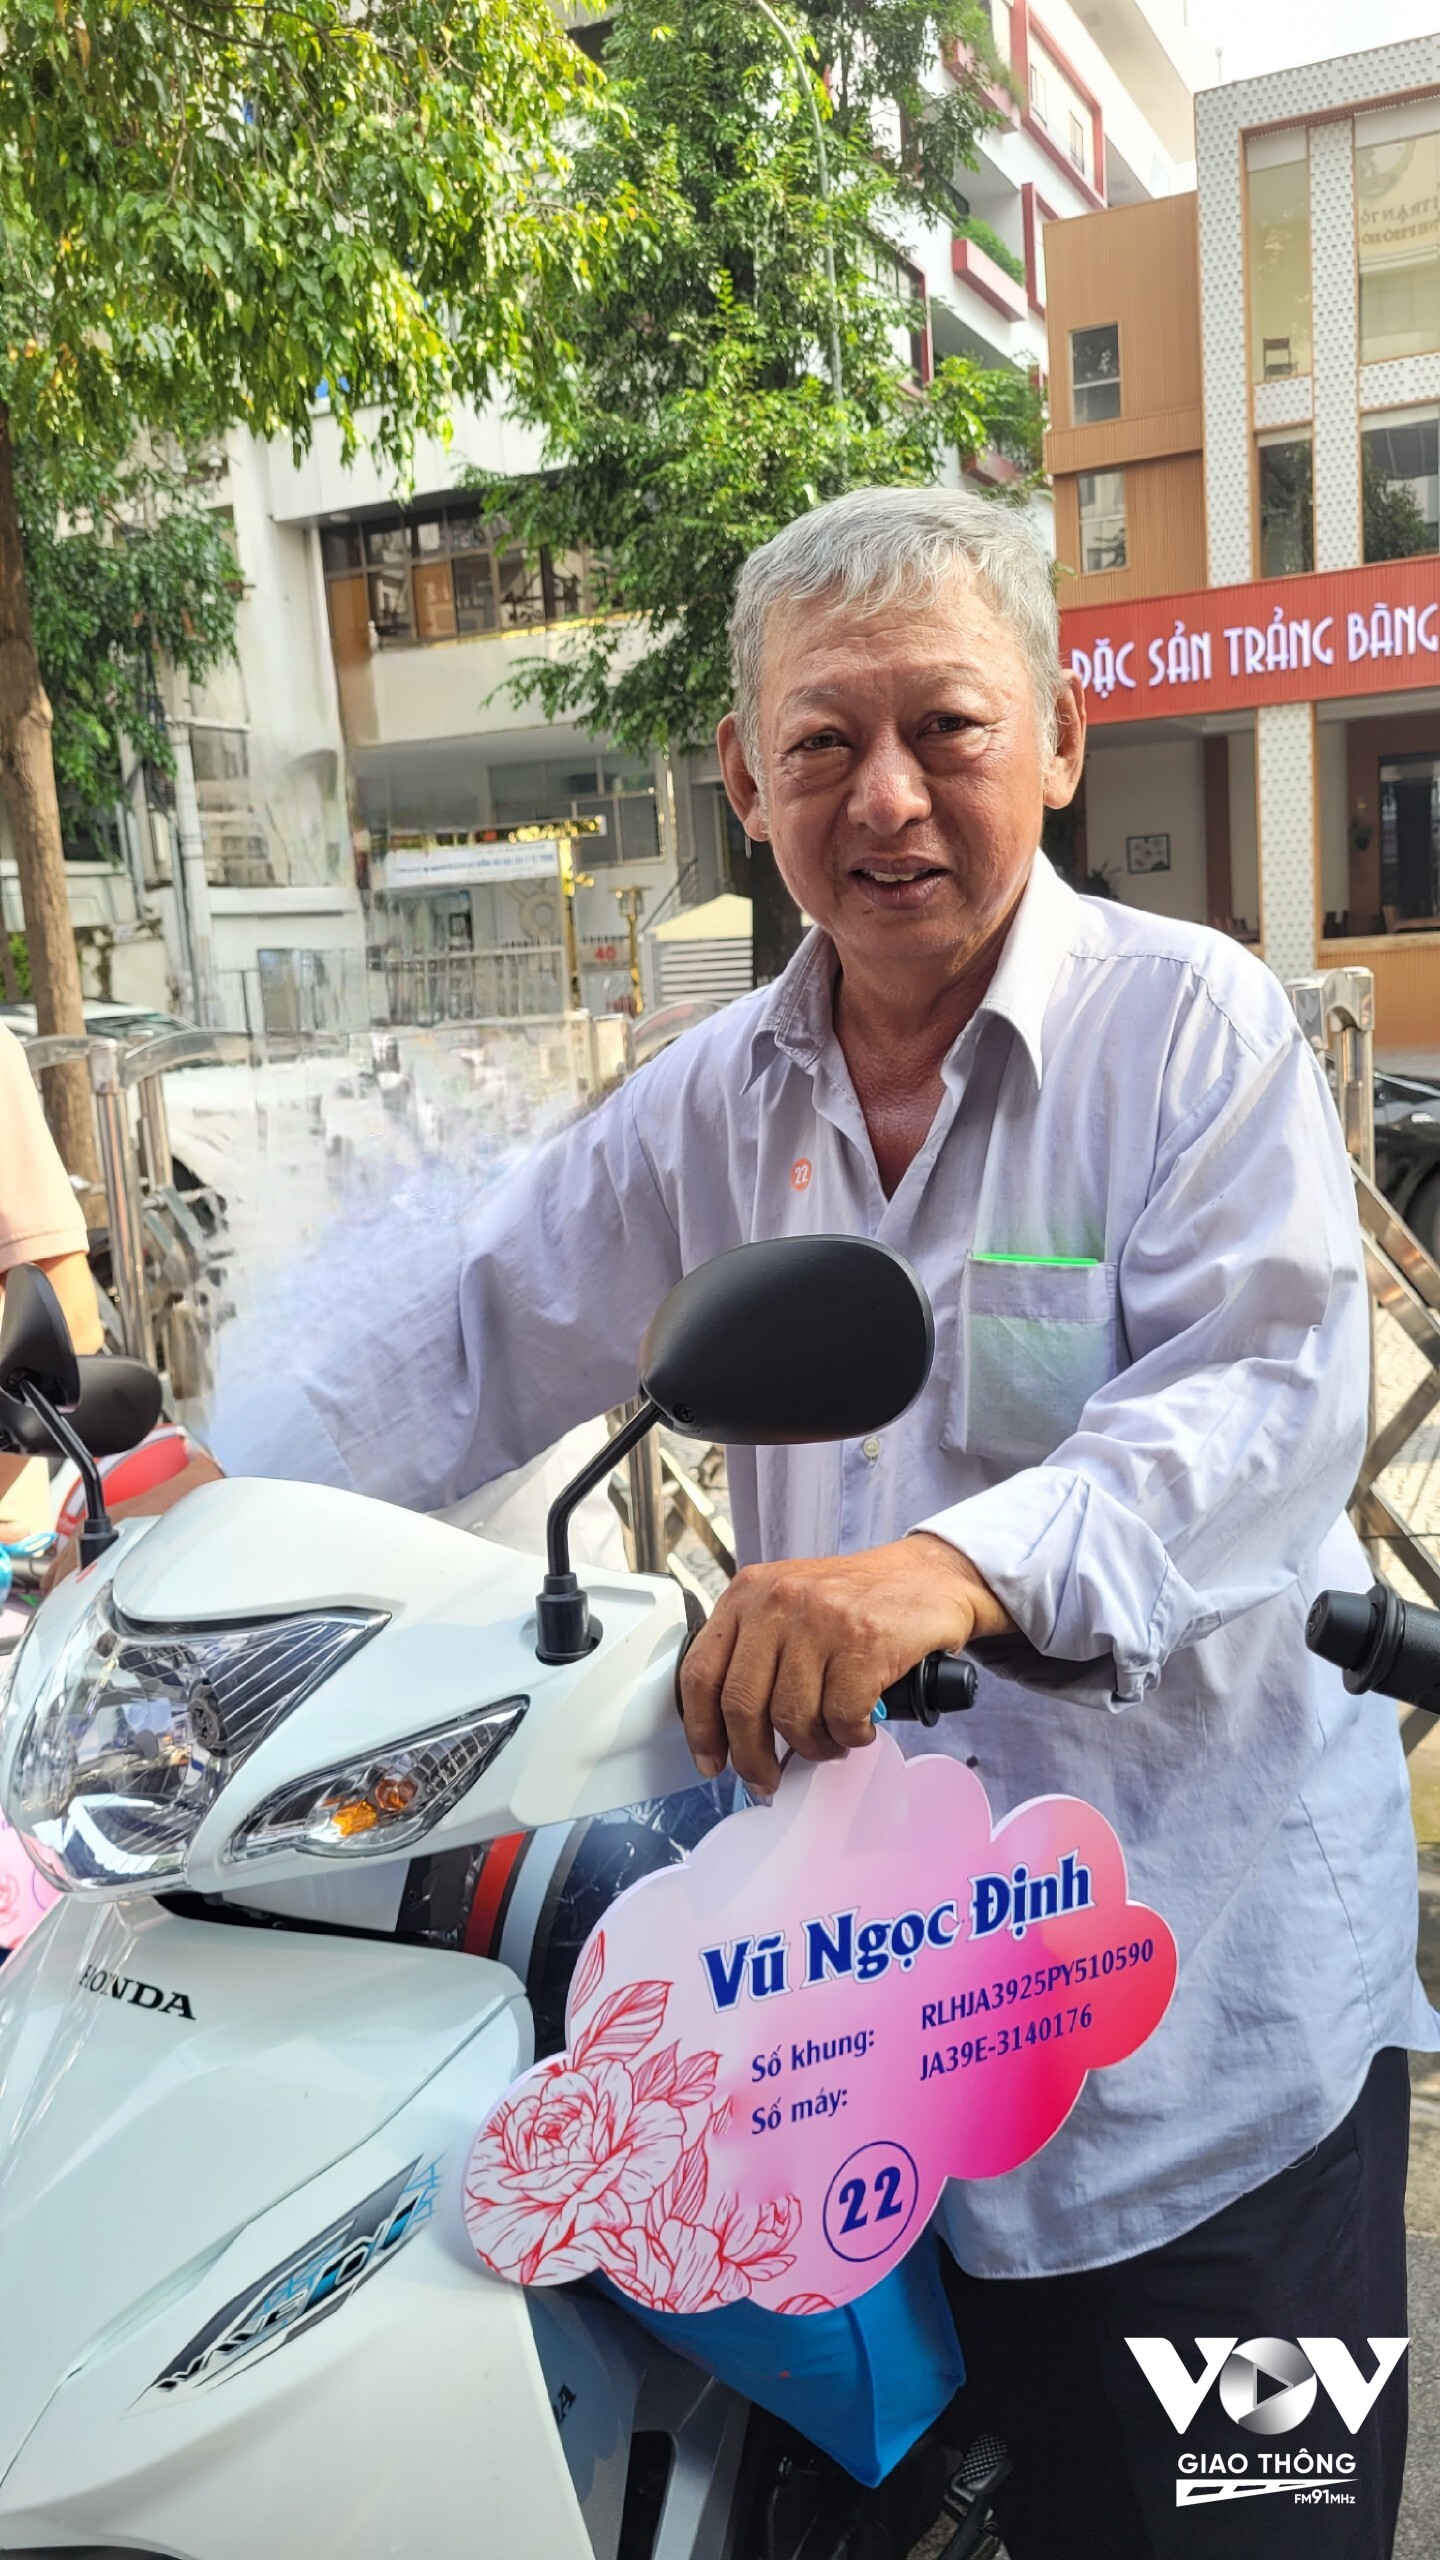 Niềm vui của ông Vũ Ngọc Định khi có chiếc xe máy mới. Ông chia sẻ, chiếc xe này giúp con ông đi học Đại học đỡ vất vả hơn.